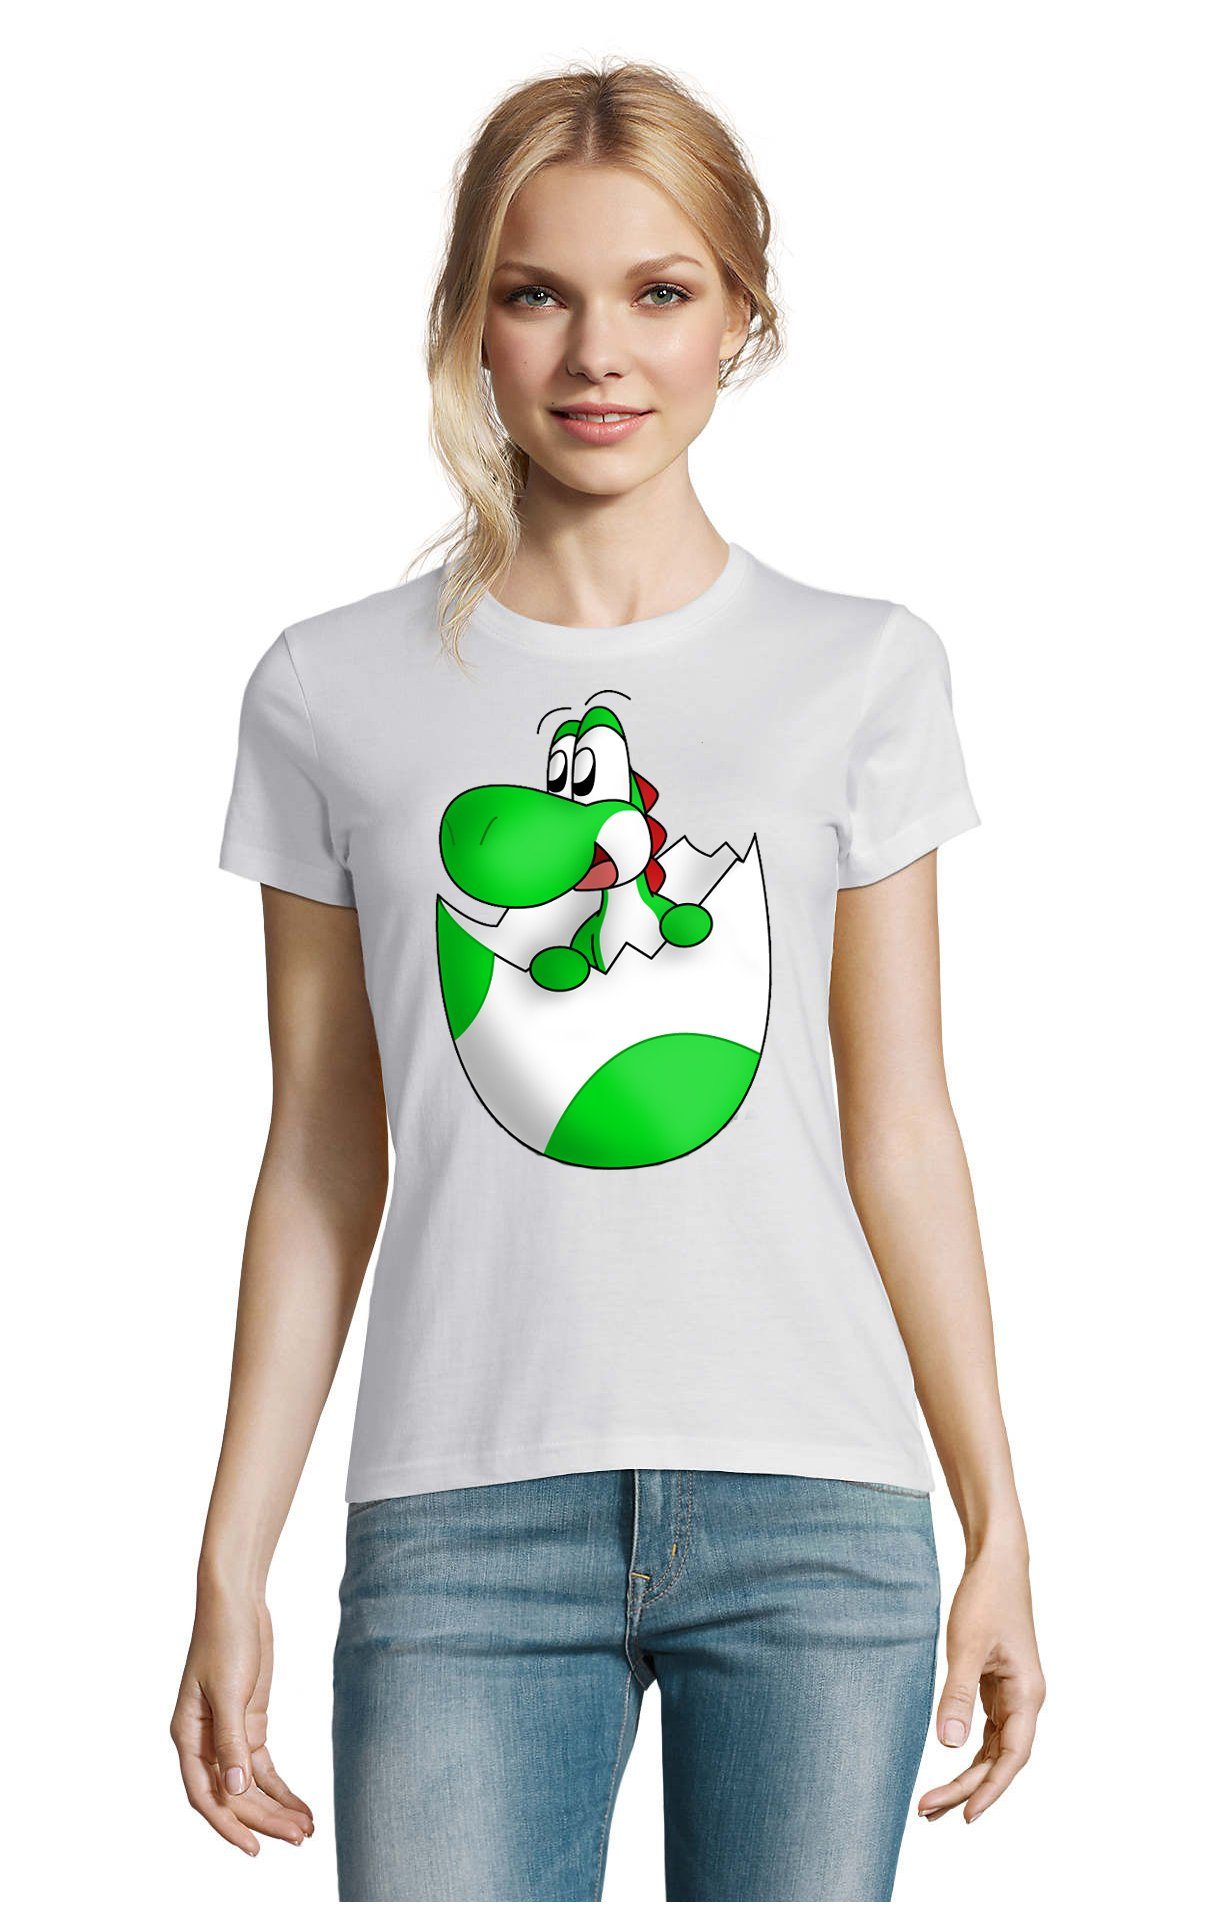 Blondie & Brownie T-Shirt Damen Konsole Gaming Nintendo Mario Spiel Baby Yoshi Ei Weiss